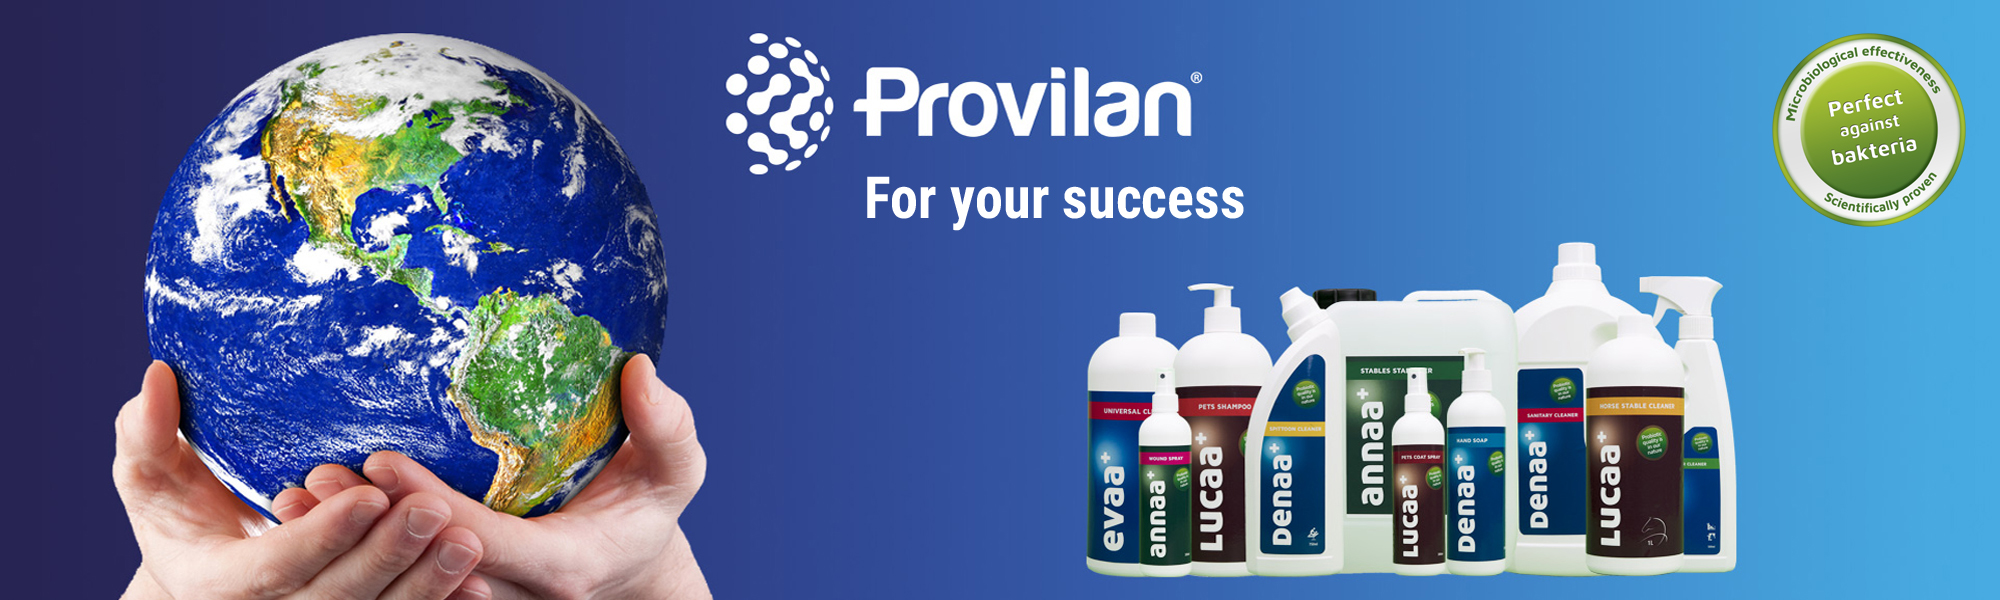 Provilan. A successful concept.